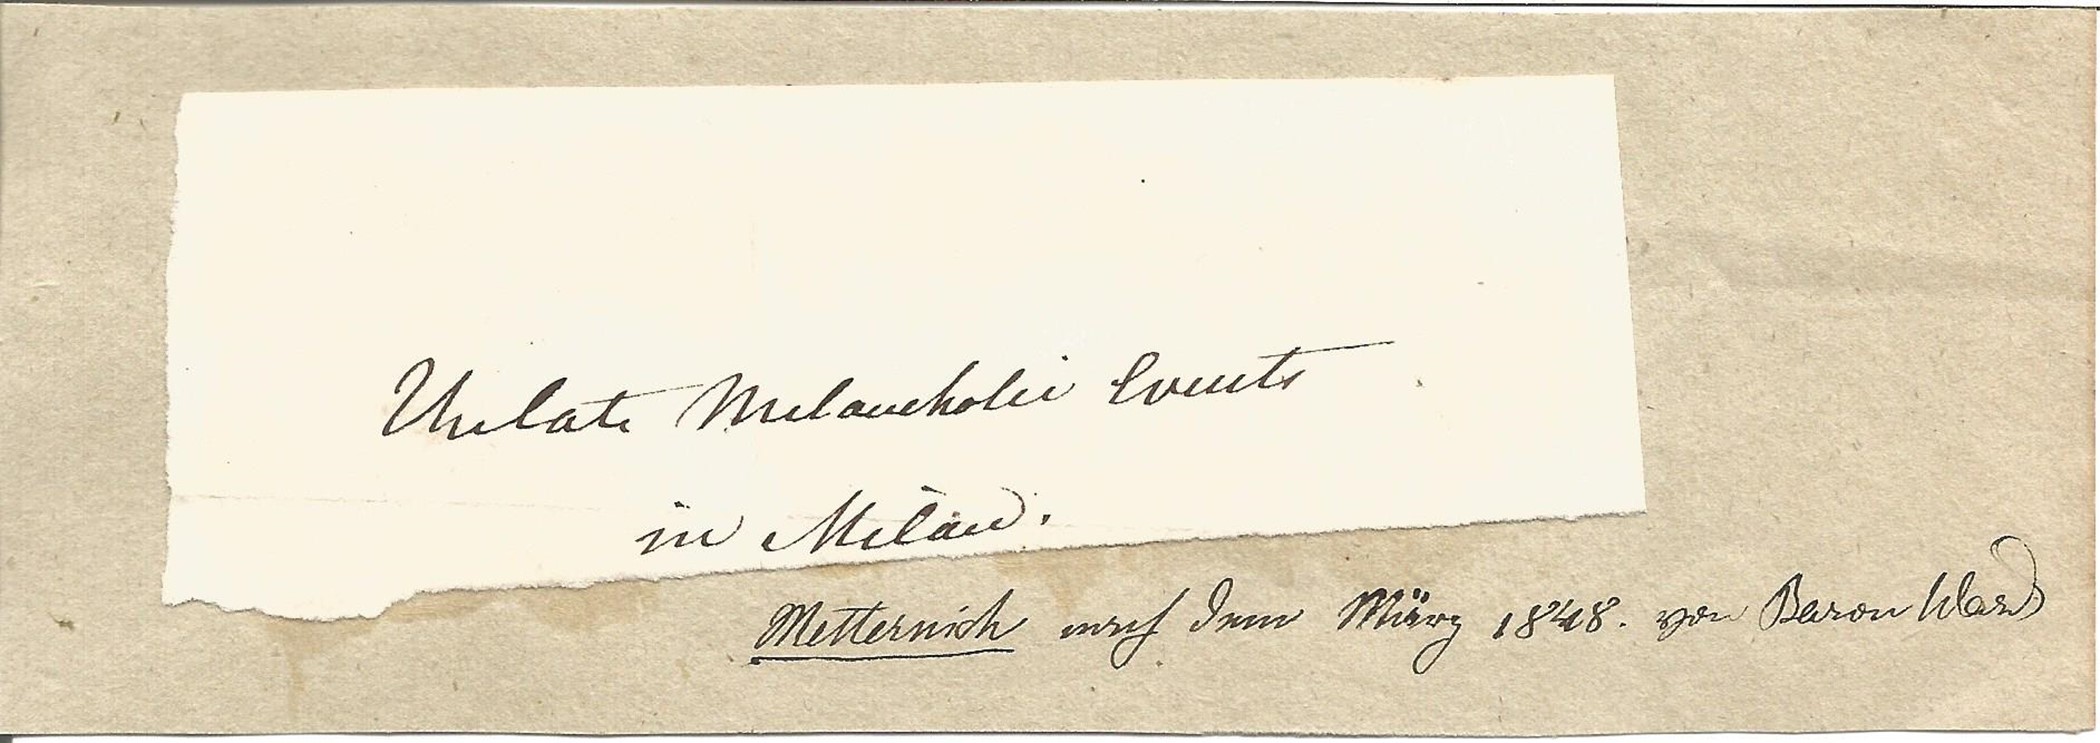 Klemens von Metternich sample of handwriting. (15 May 1773 - 11 June 1859), known as Klemens von